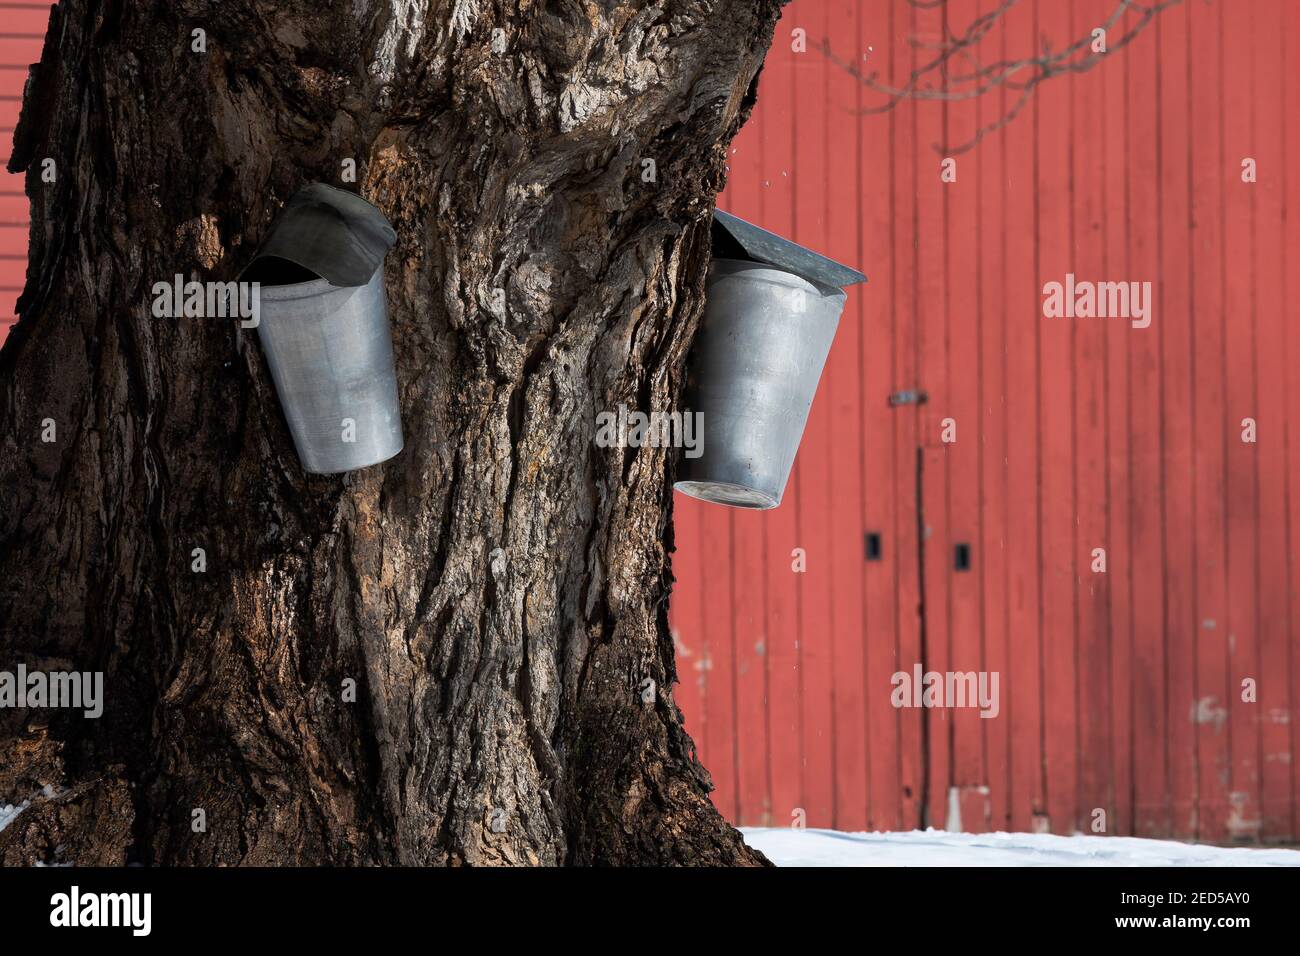 Traditionelle Metalleimer zum Abklopfen von saft verwendet, um Ahornsirup aus einem alten Ahornbaum von Red Scheune zu machen. Stockfoto